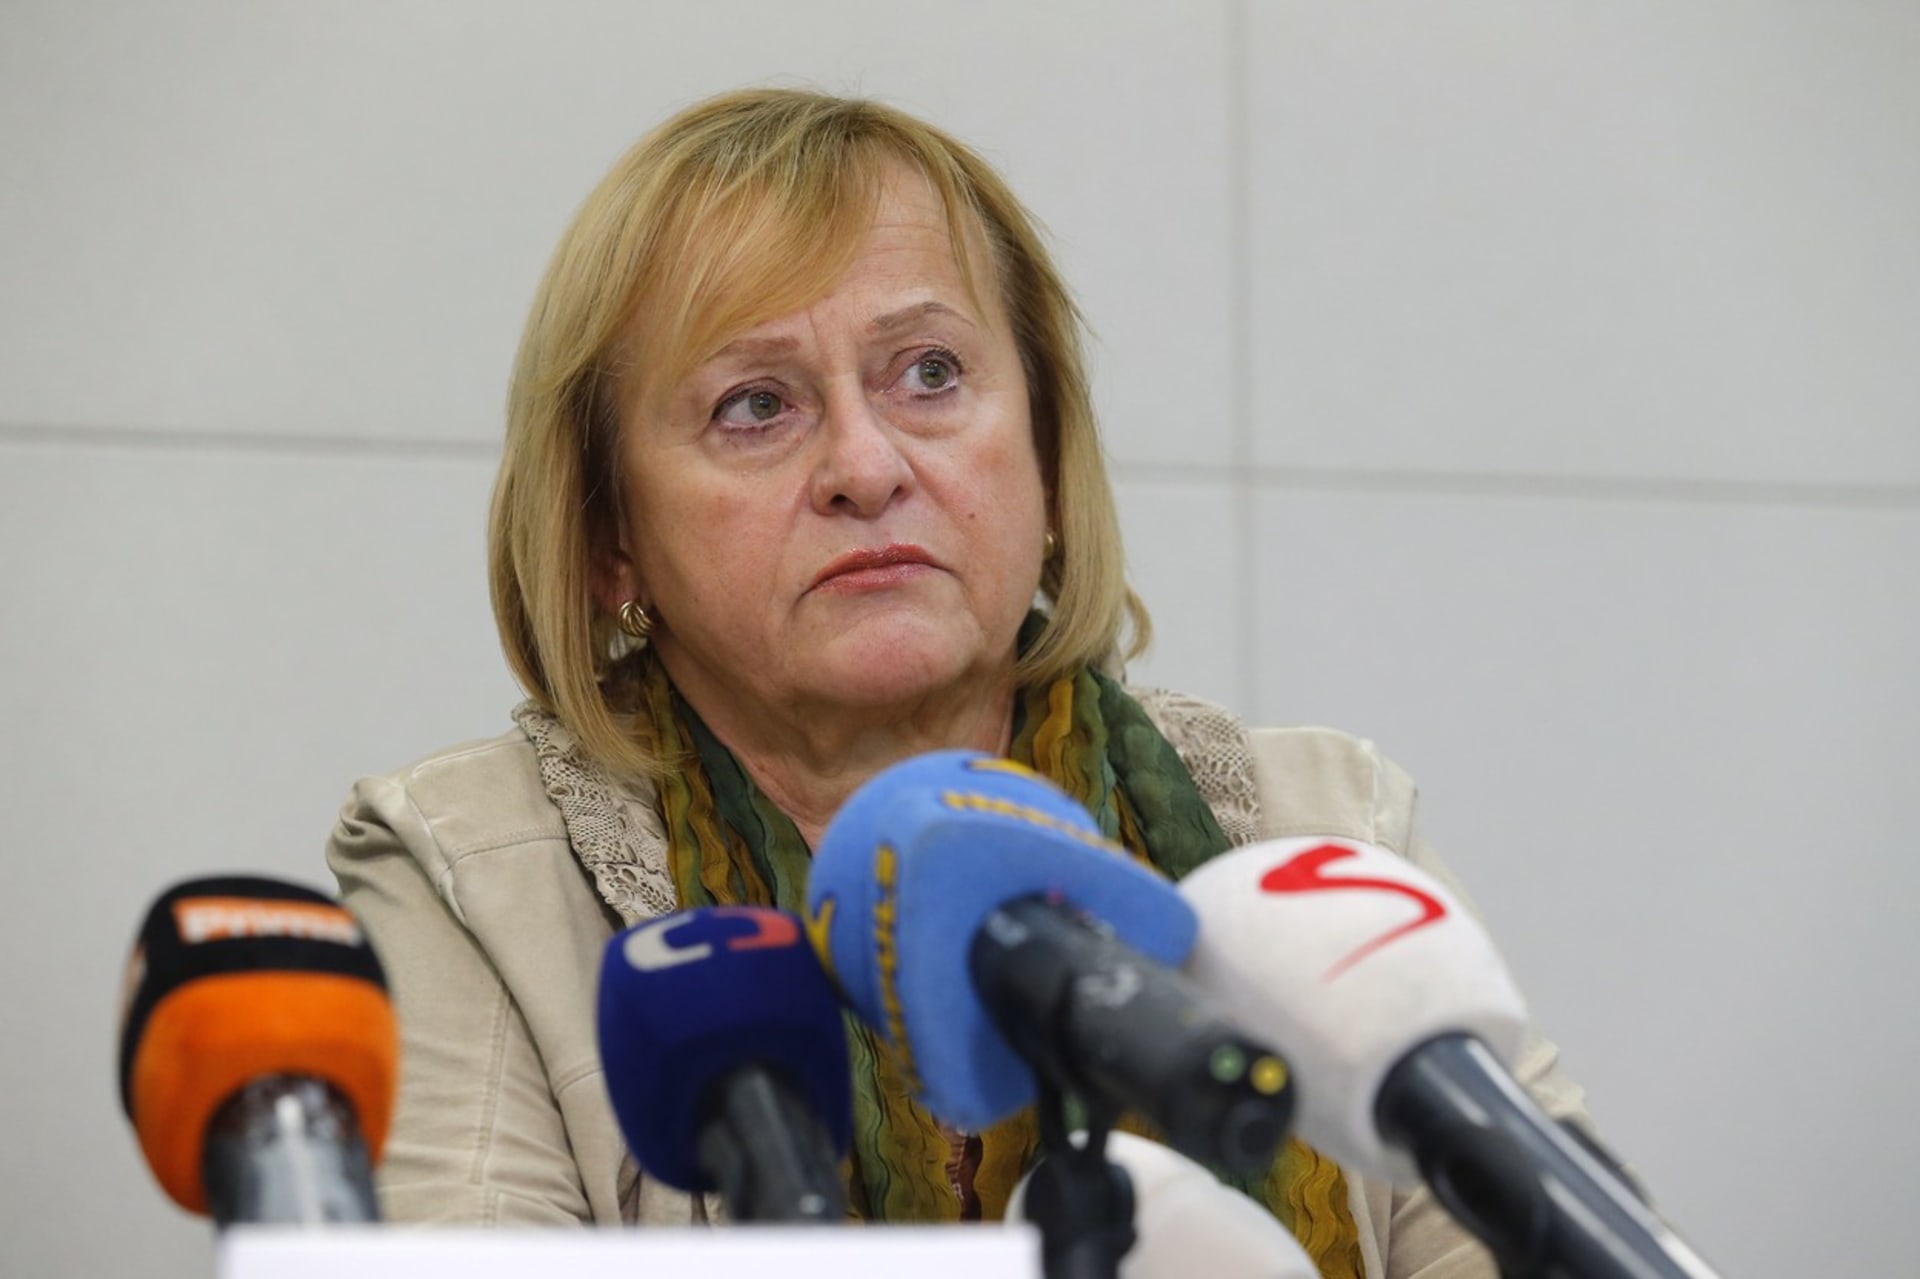 Hana Roháčová během tiskové konference k aktuální situaci v souvislosti s koronavirem